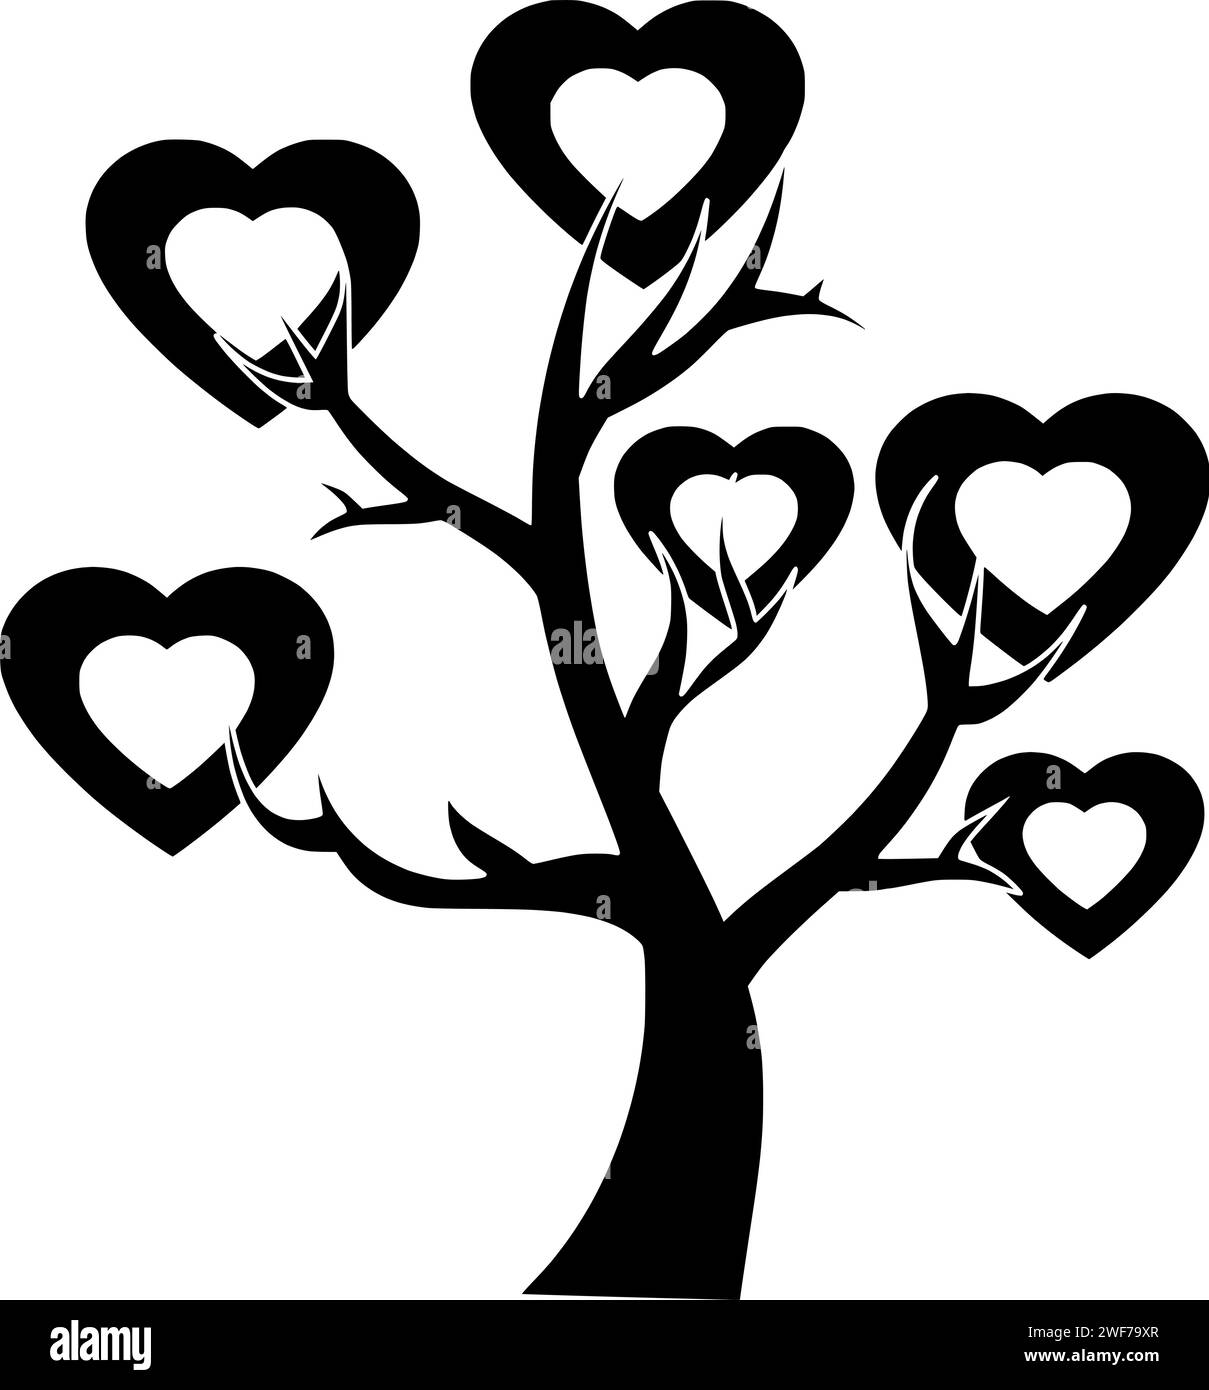 Baum Illustration Herz Silhouette Natur Logo Liebe Icon Pflanze Umriss valentine natürliche Wald Blatt Jahreszeit grüne Umwelt Tag Romantik Form Zweig Holz Garten Stock Vektor